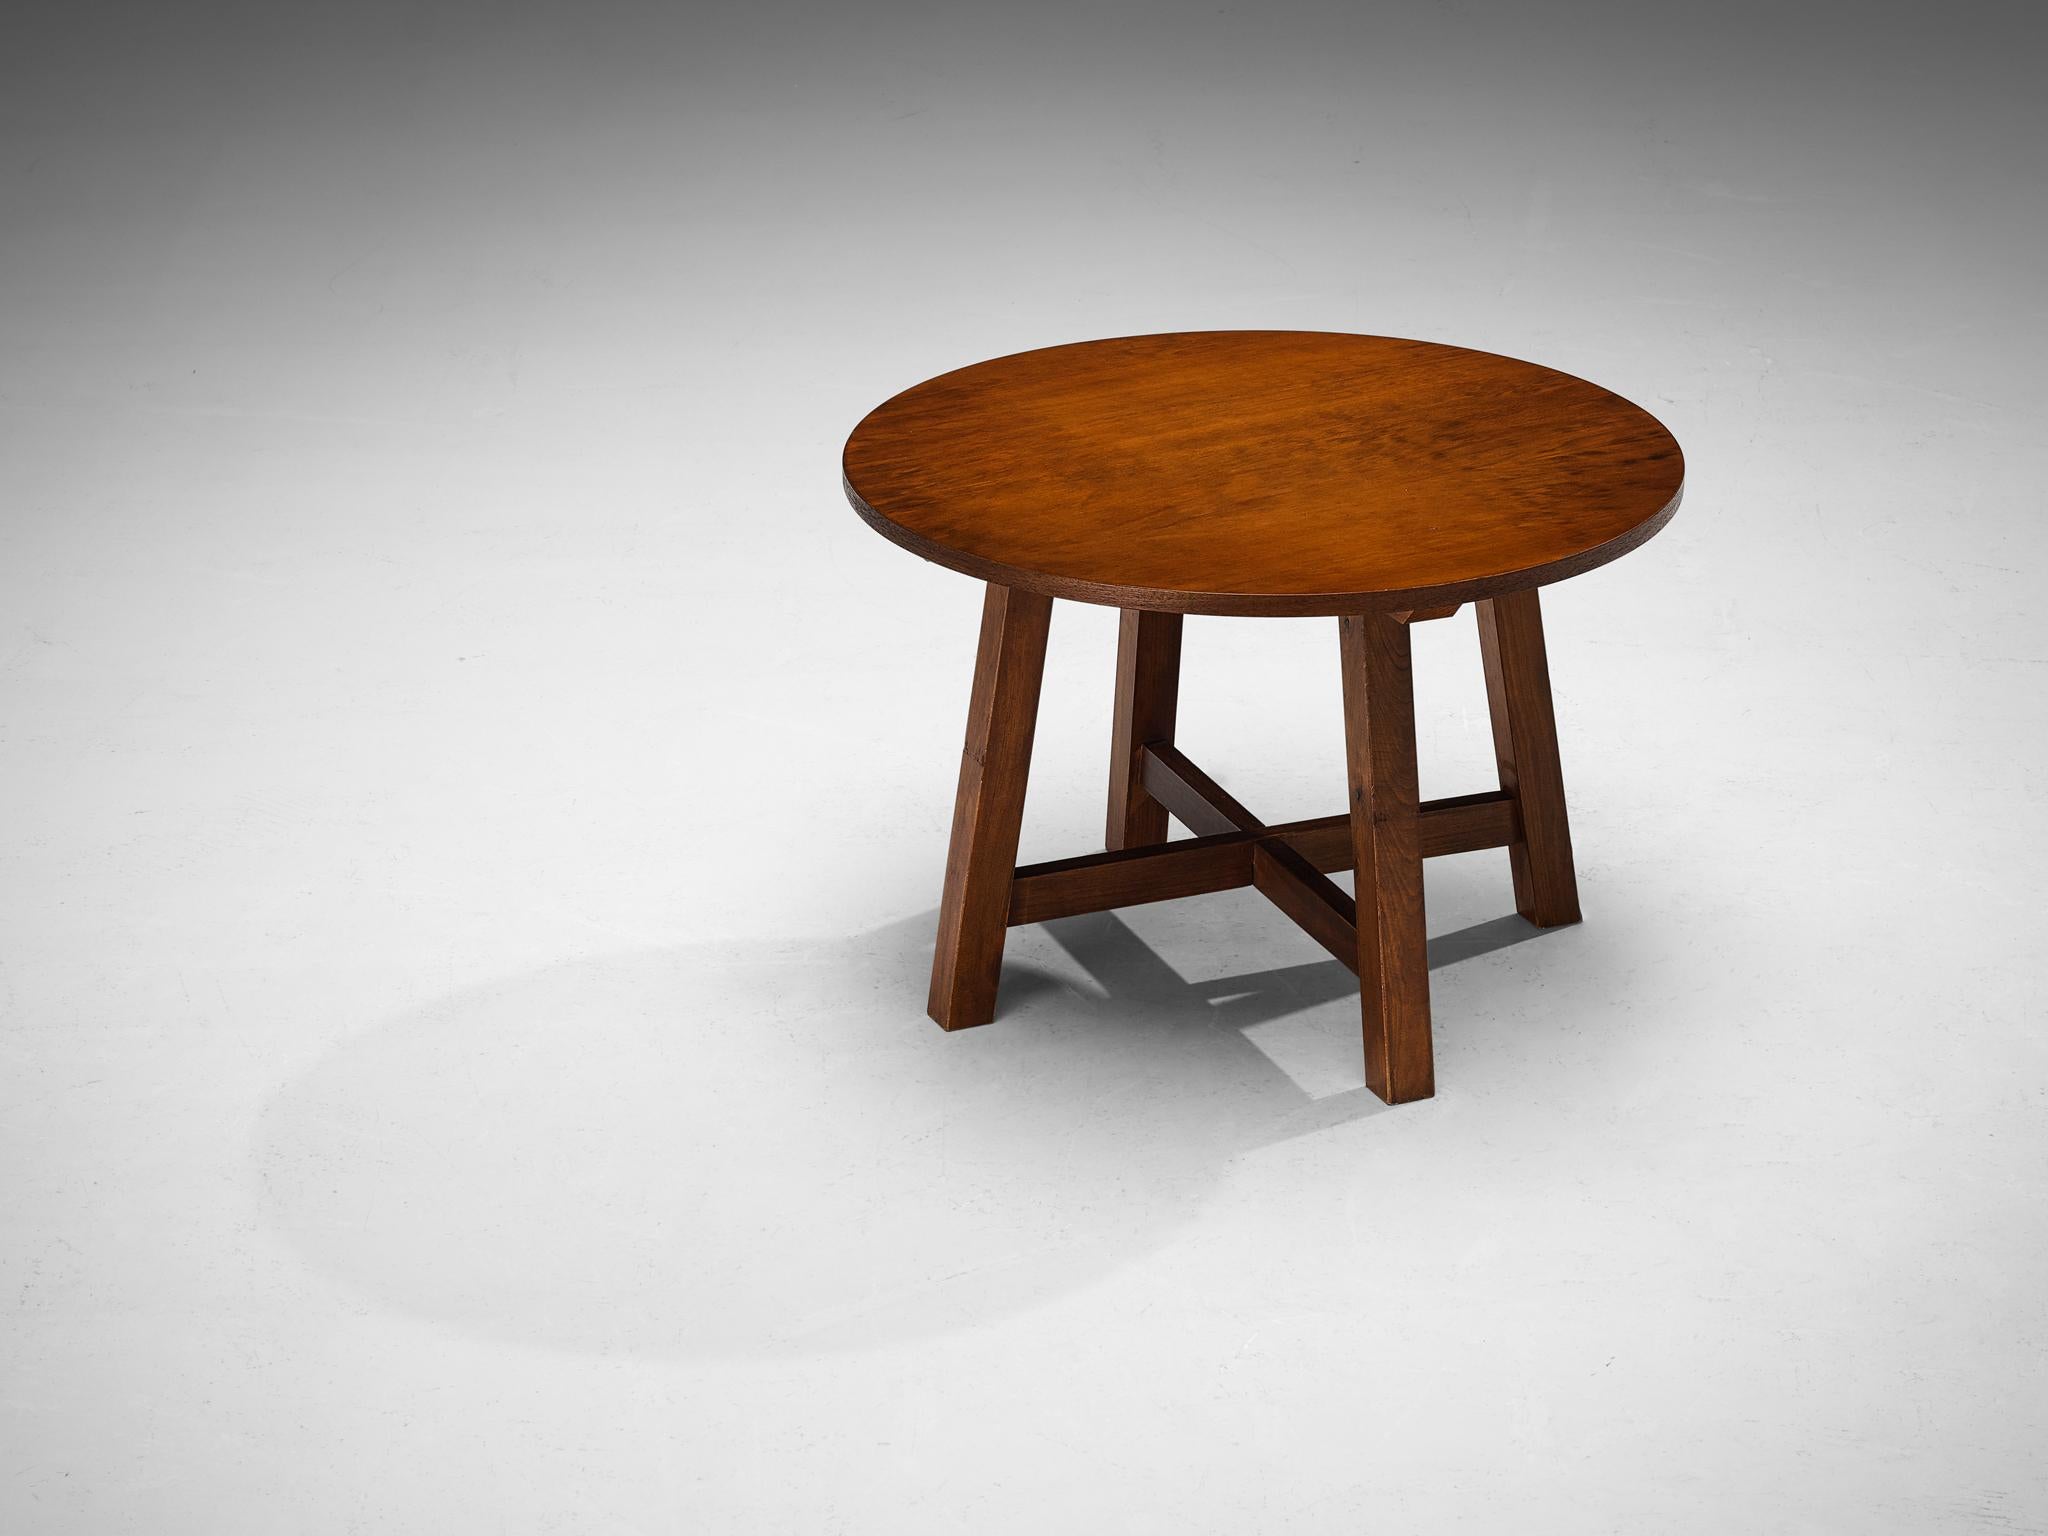 Table d'appoint, noyer, pin, Espagne, années 1960

Fabriquée en Espagne, cette table à l'allure simple et naturaliste s'intègre parfaitement à l'intérieur. Le plateau rond est exécuté en noyer et se prolonge au-delà de la base. Caractérisée par une